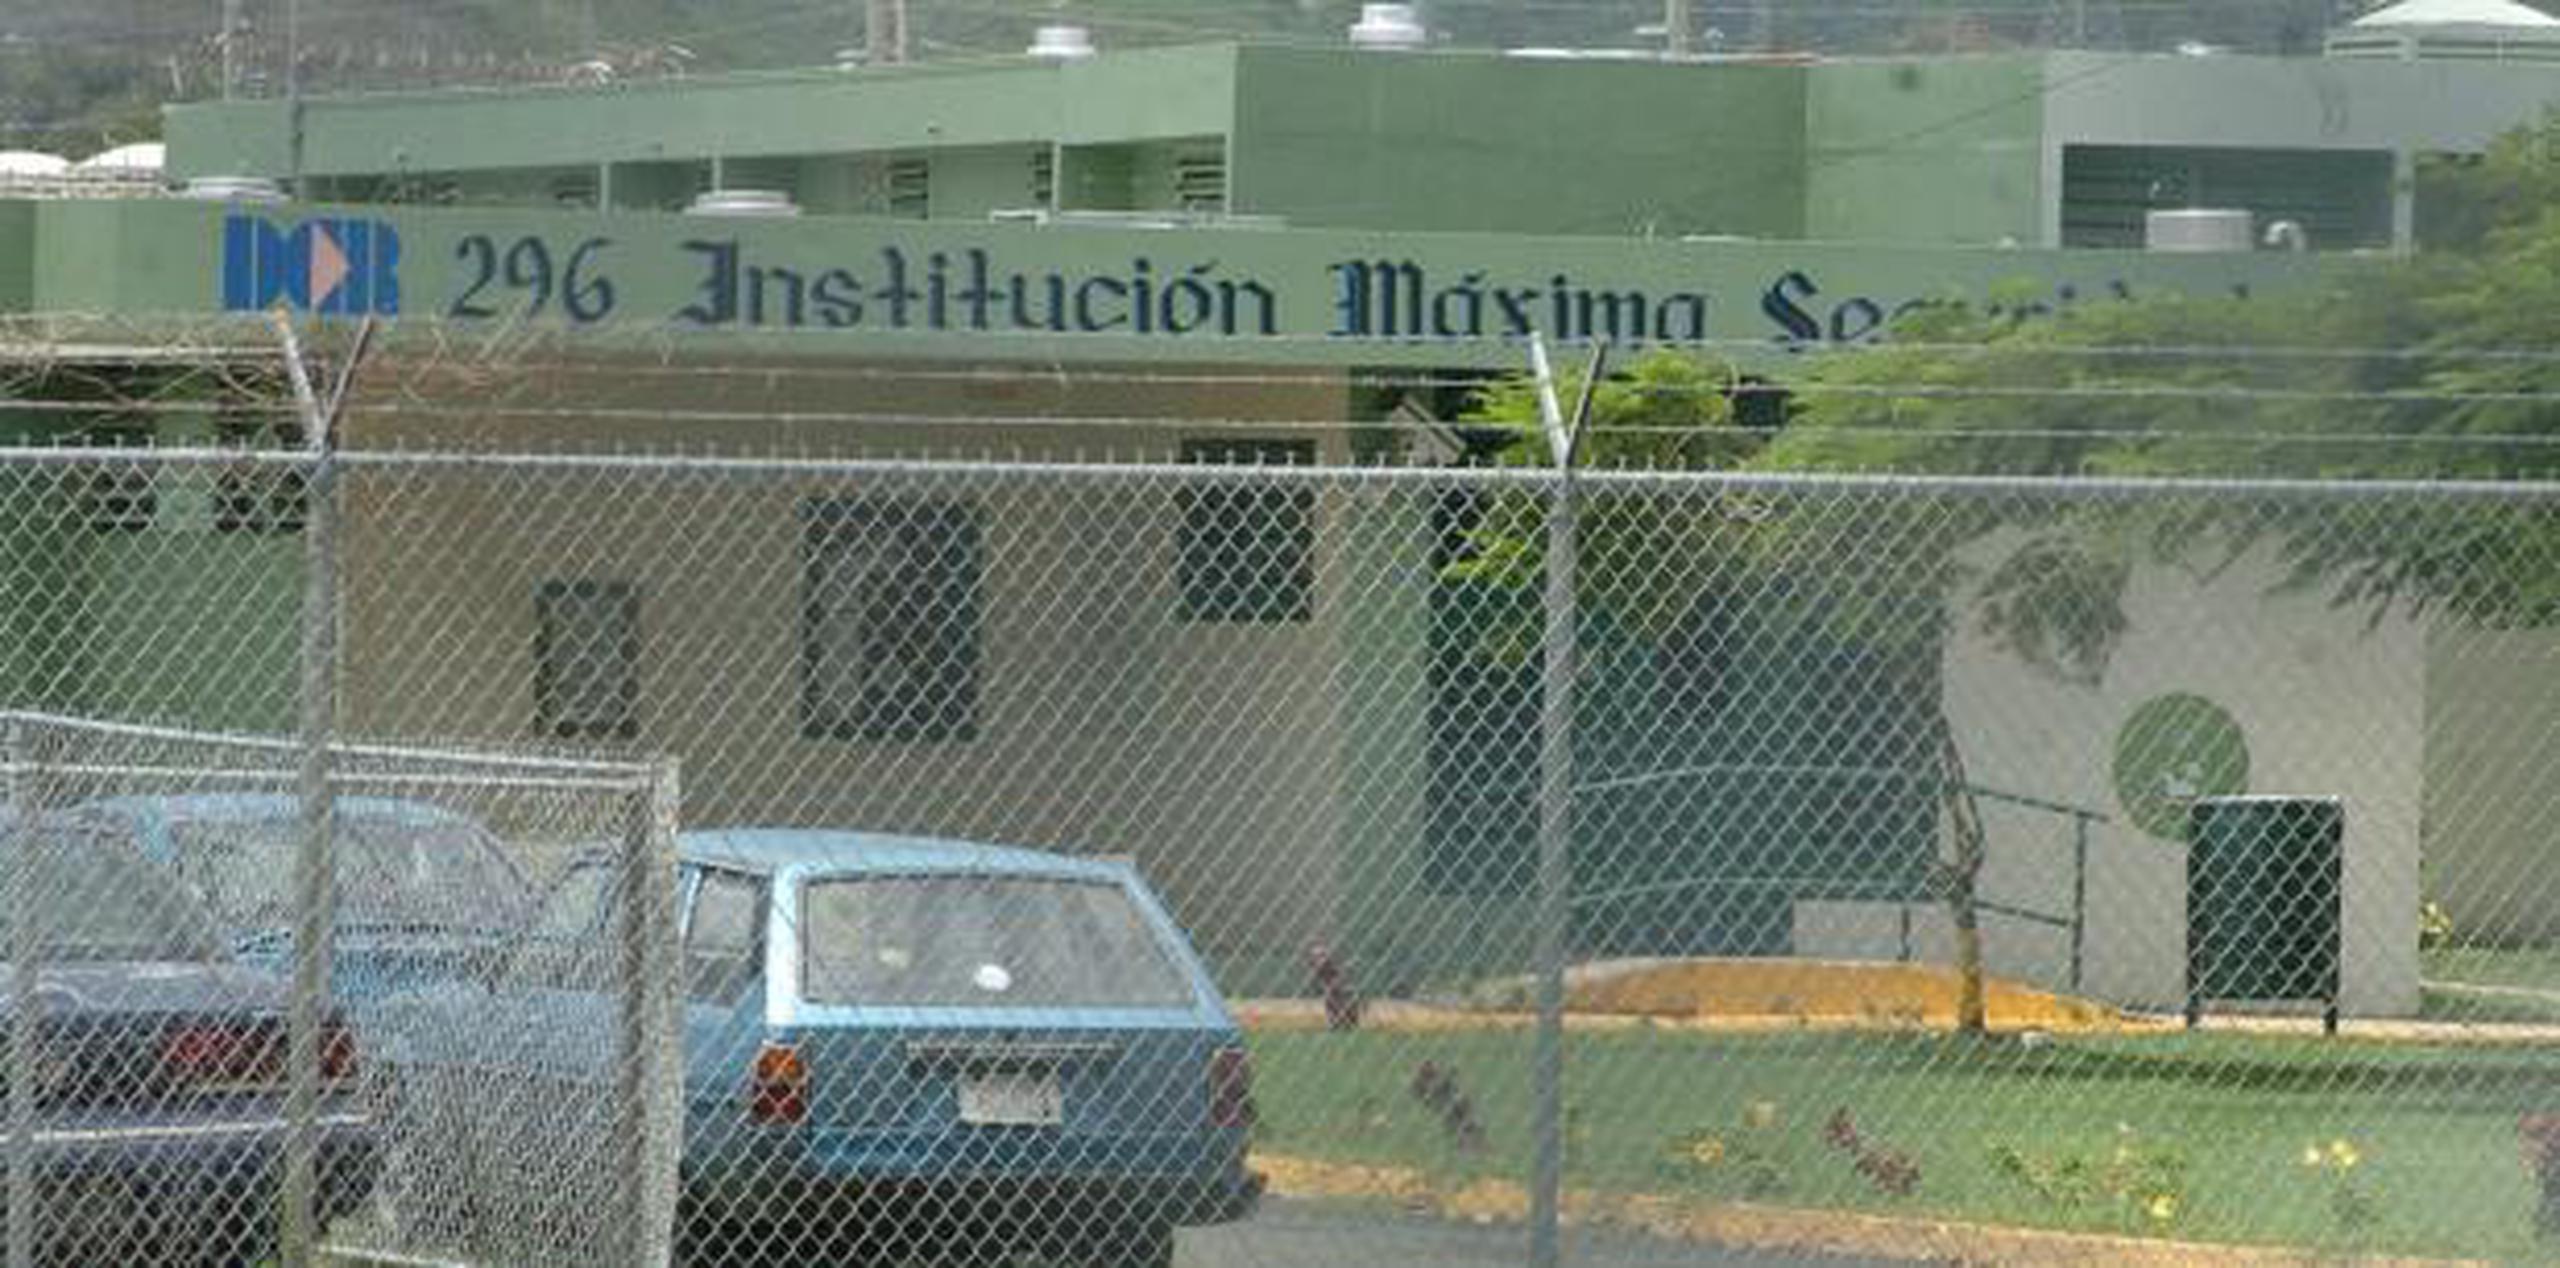 El incidente ocurrió en la cárcel 296 de Guayama, de acuerdo a la Policía. (Archivo)